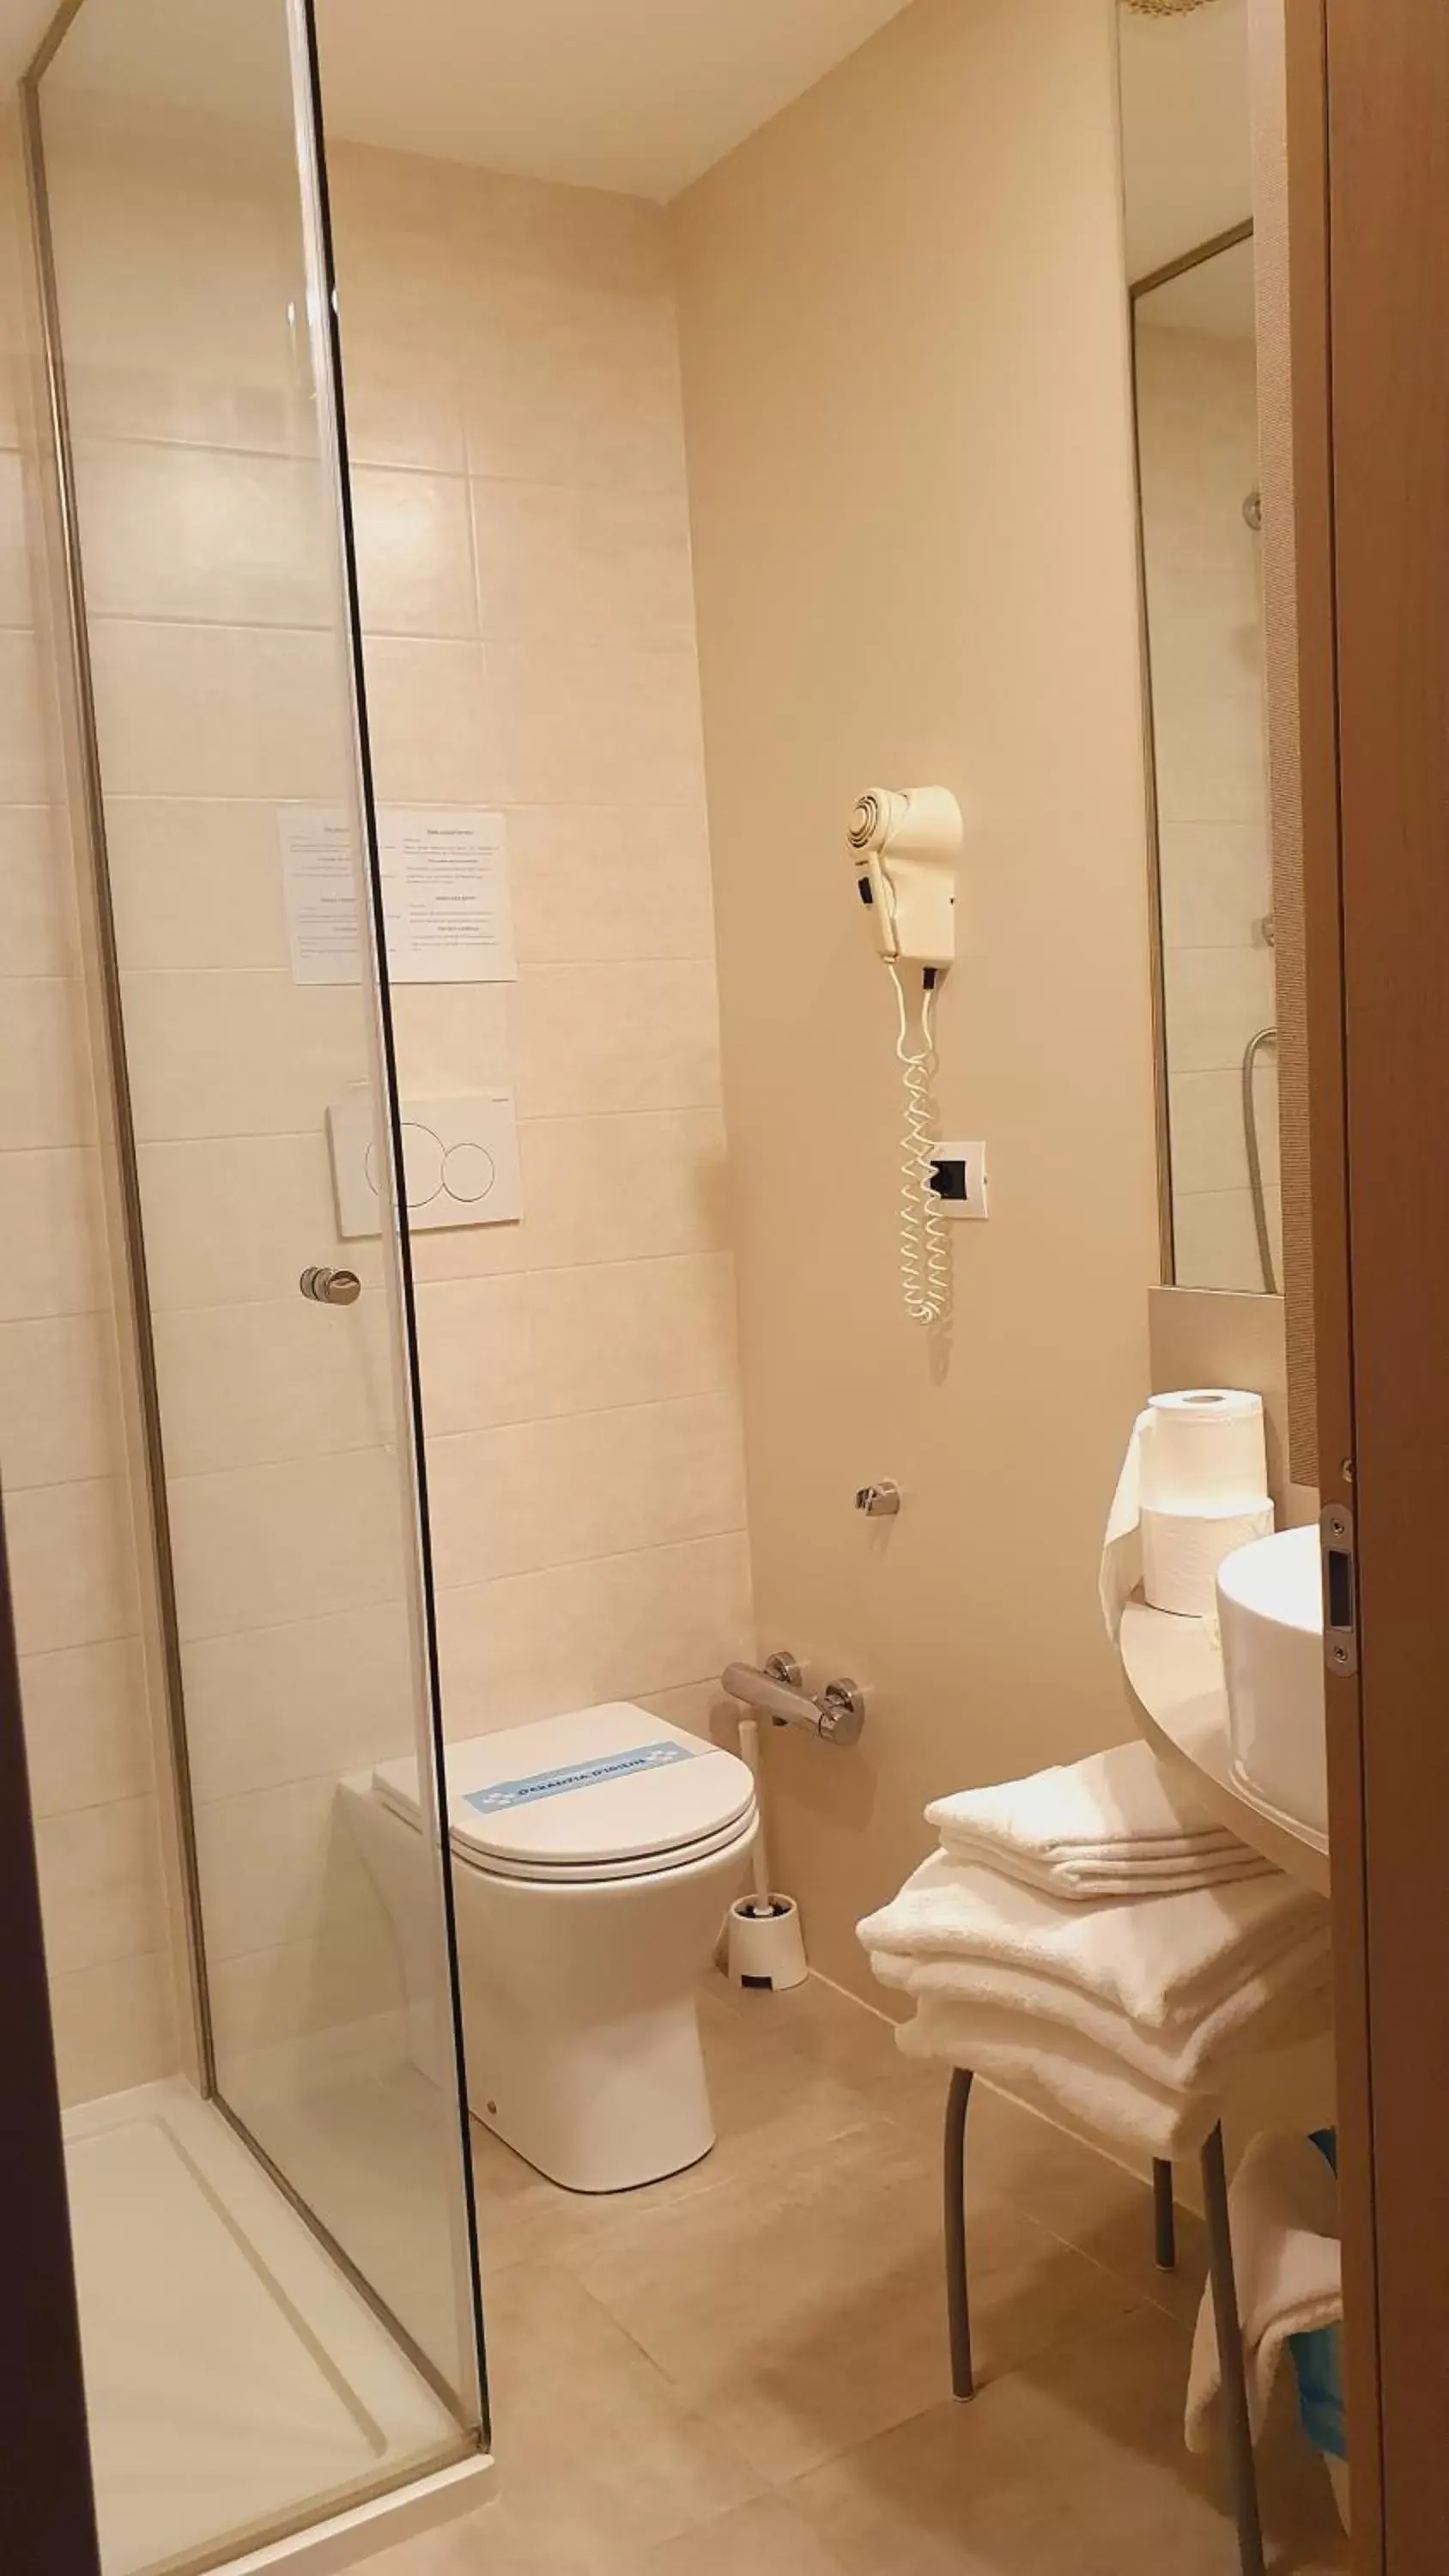 Bathroom in Hotel Ristorante Stampa